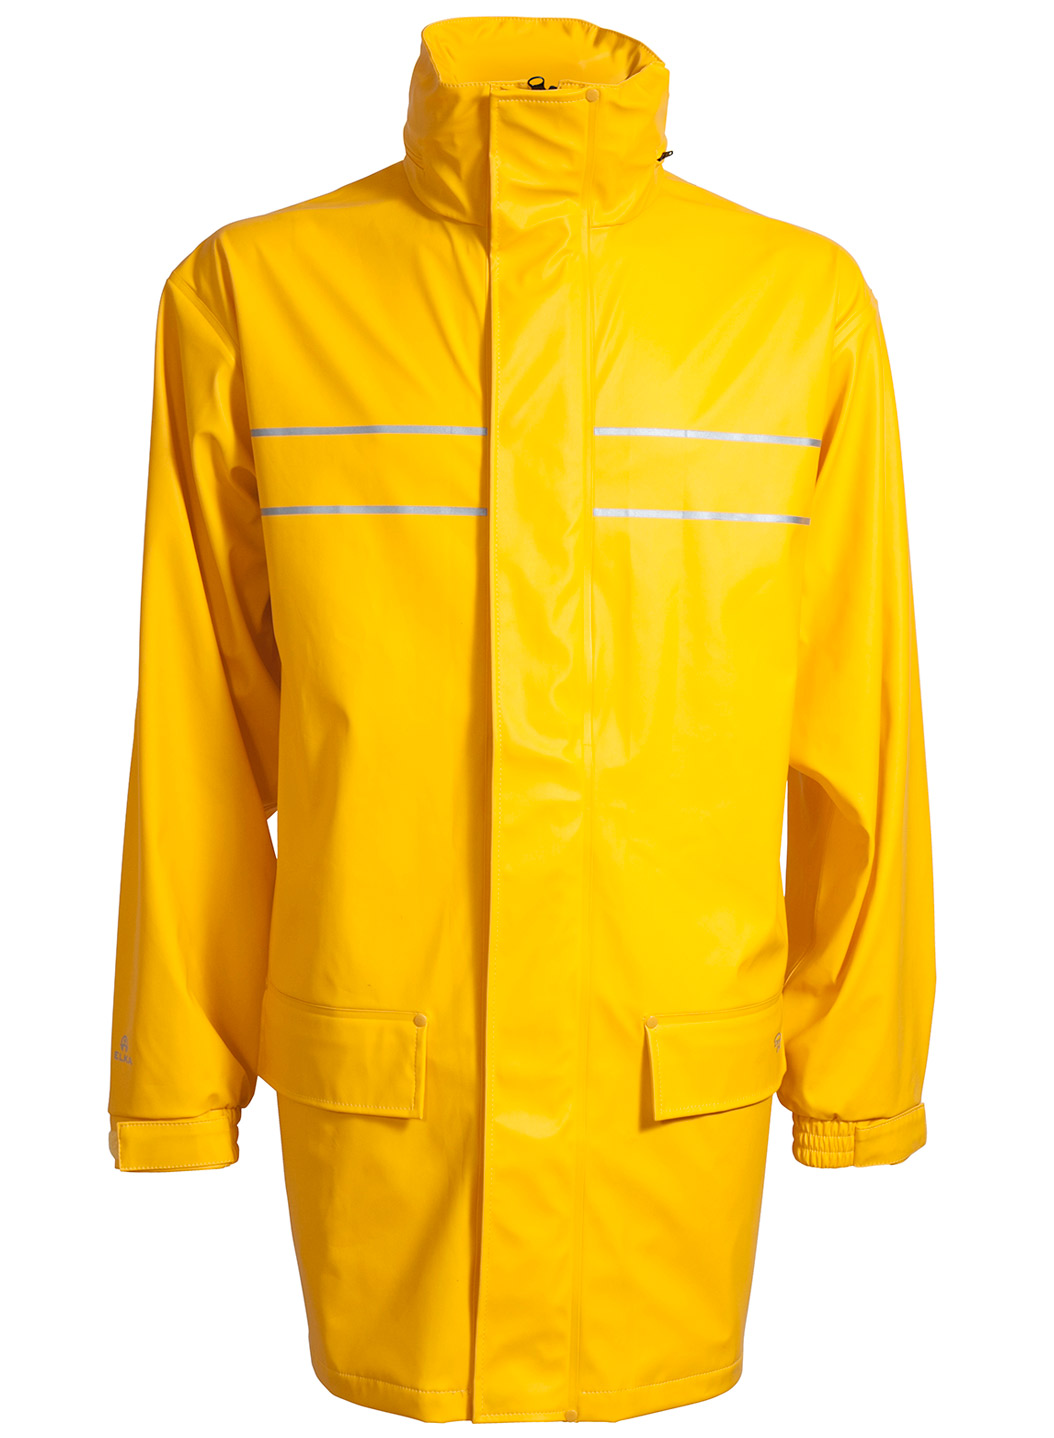 ELKA-Regenschutz, -D-LUX-Regen-Nässe-Wetter-Schutz-Jacke, DRY ZONE, 190g/m², gelb